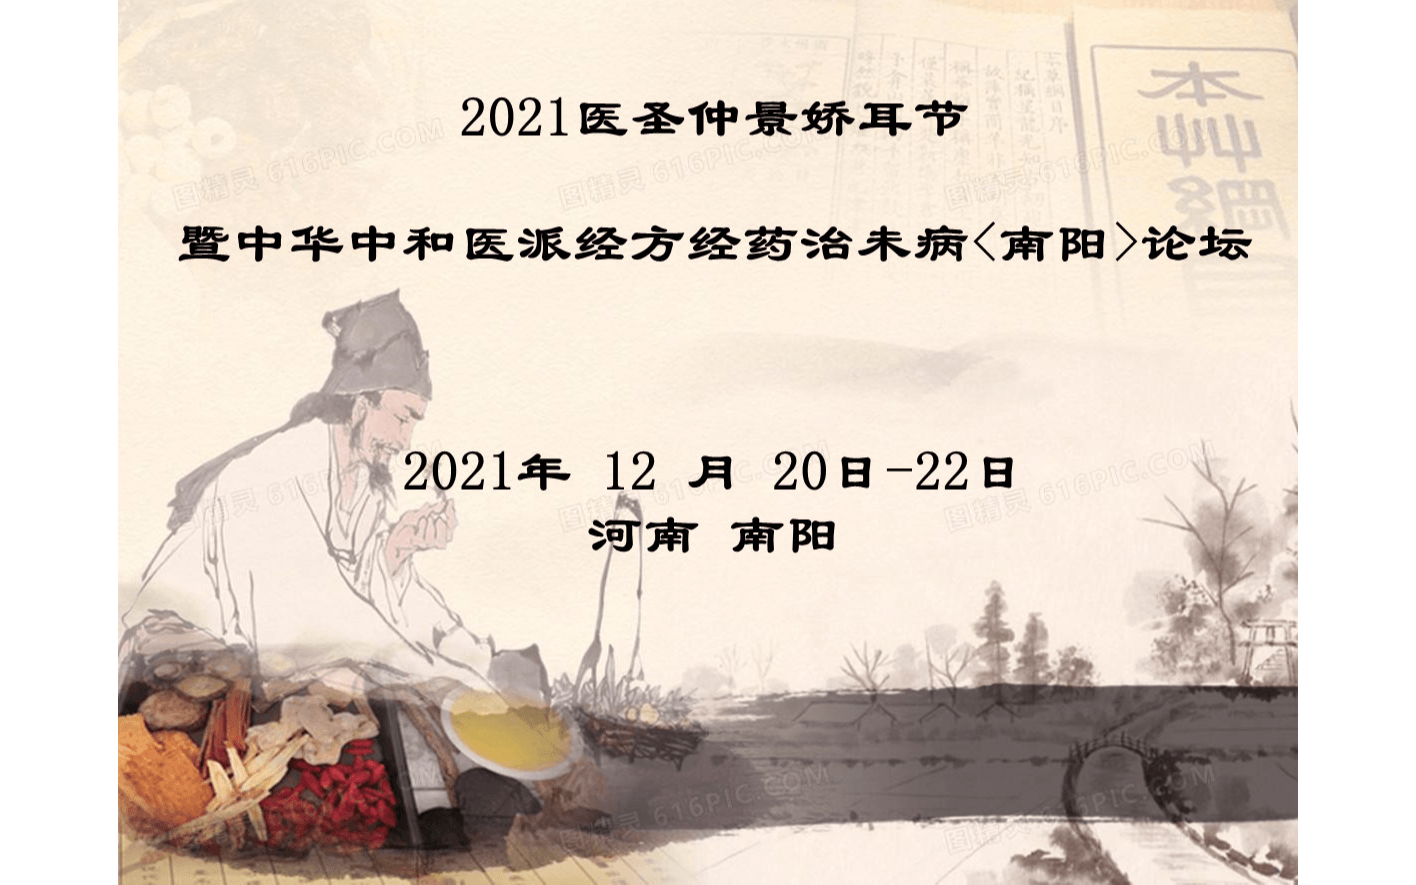 2021醫圣仲景嬌耳節暨中華中和醫派經方經藥治未病<南陽>論壇